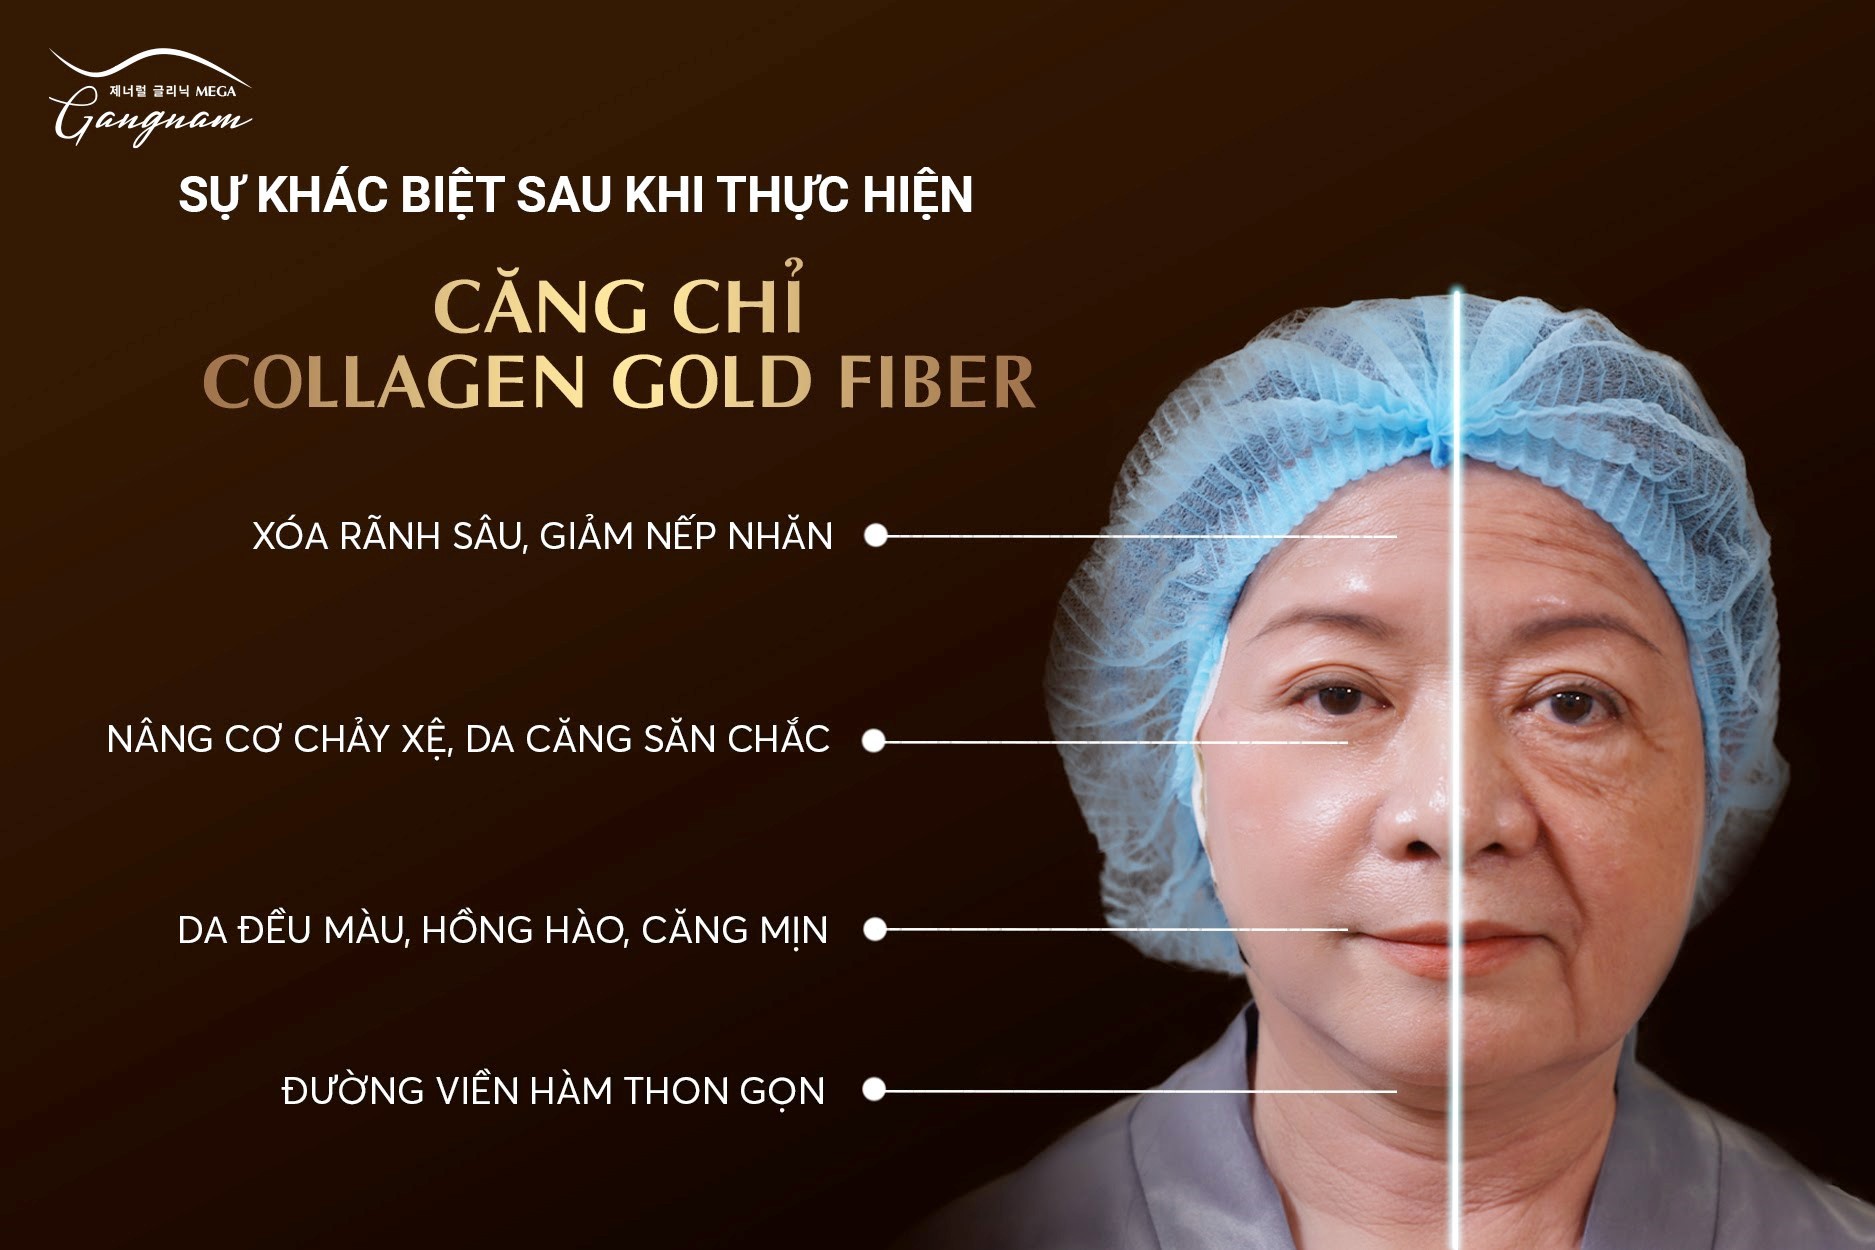 Hiệu quả vượt trội của căng chỉ Collagen Gold Fiber